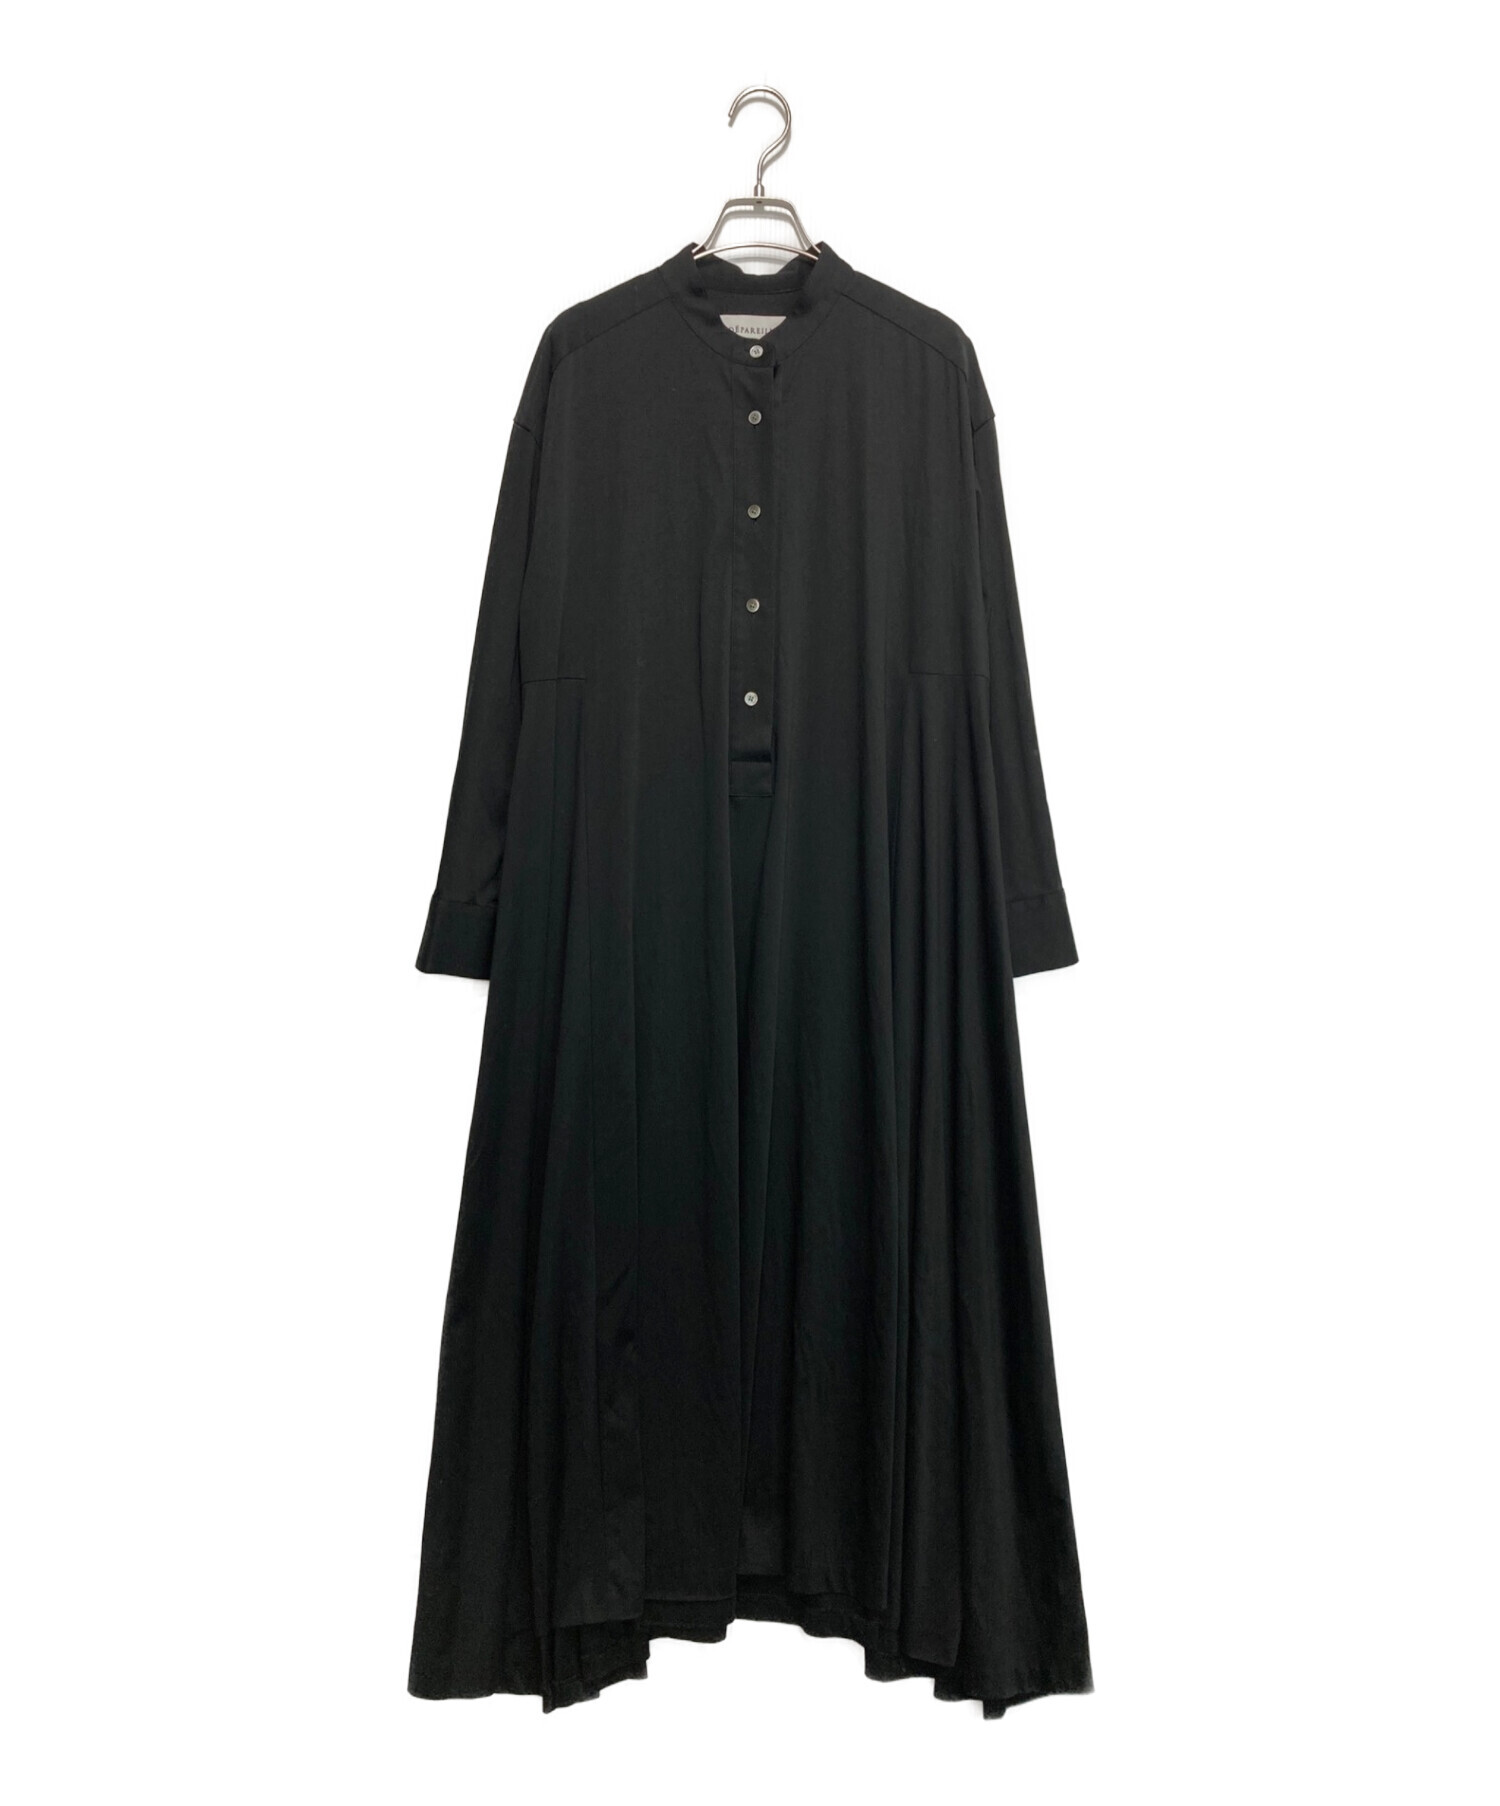 新品 デパリエ LONG POINT COLLAR DRESS ワンピース 黒-